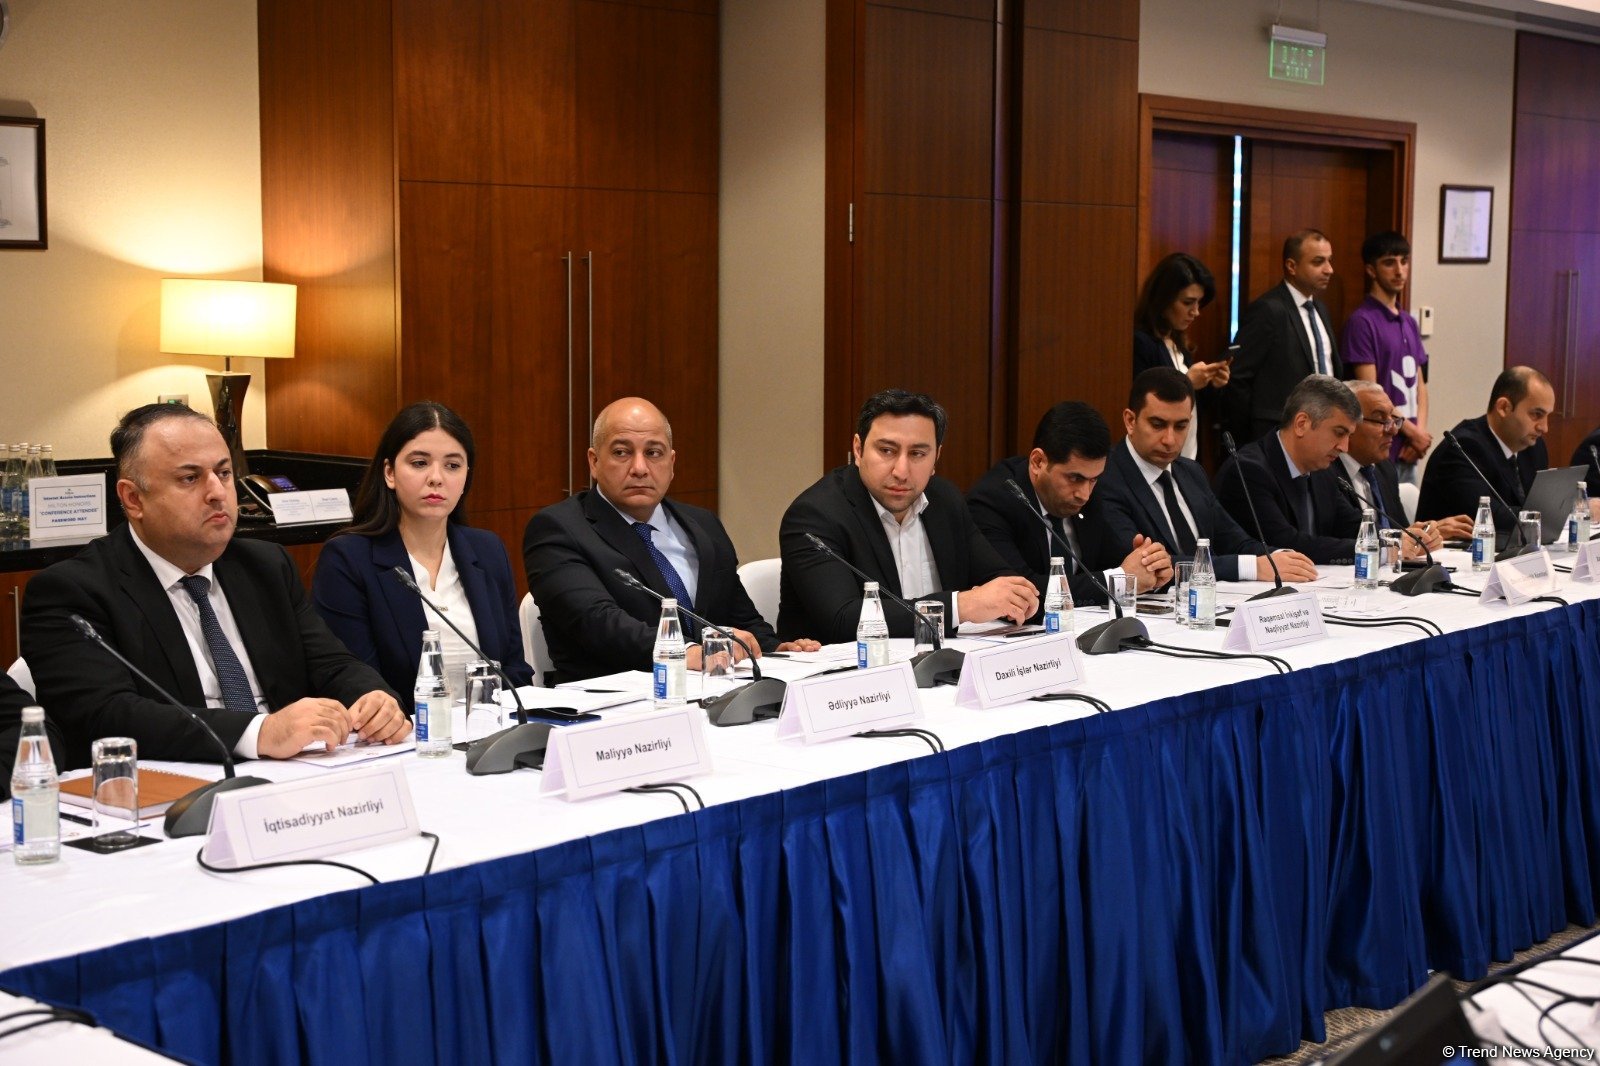 В Азербайджане прошло заседание рабочей группы Комиссии по бизнес-среде и международным рейтингам (ФОТО)